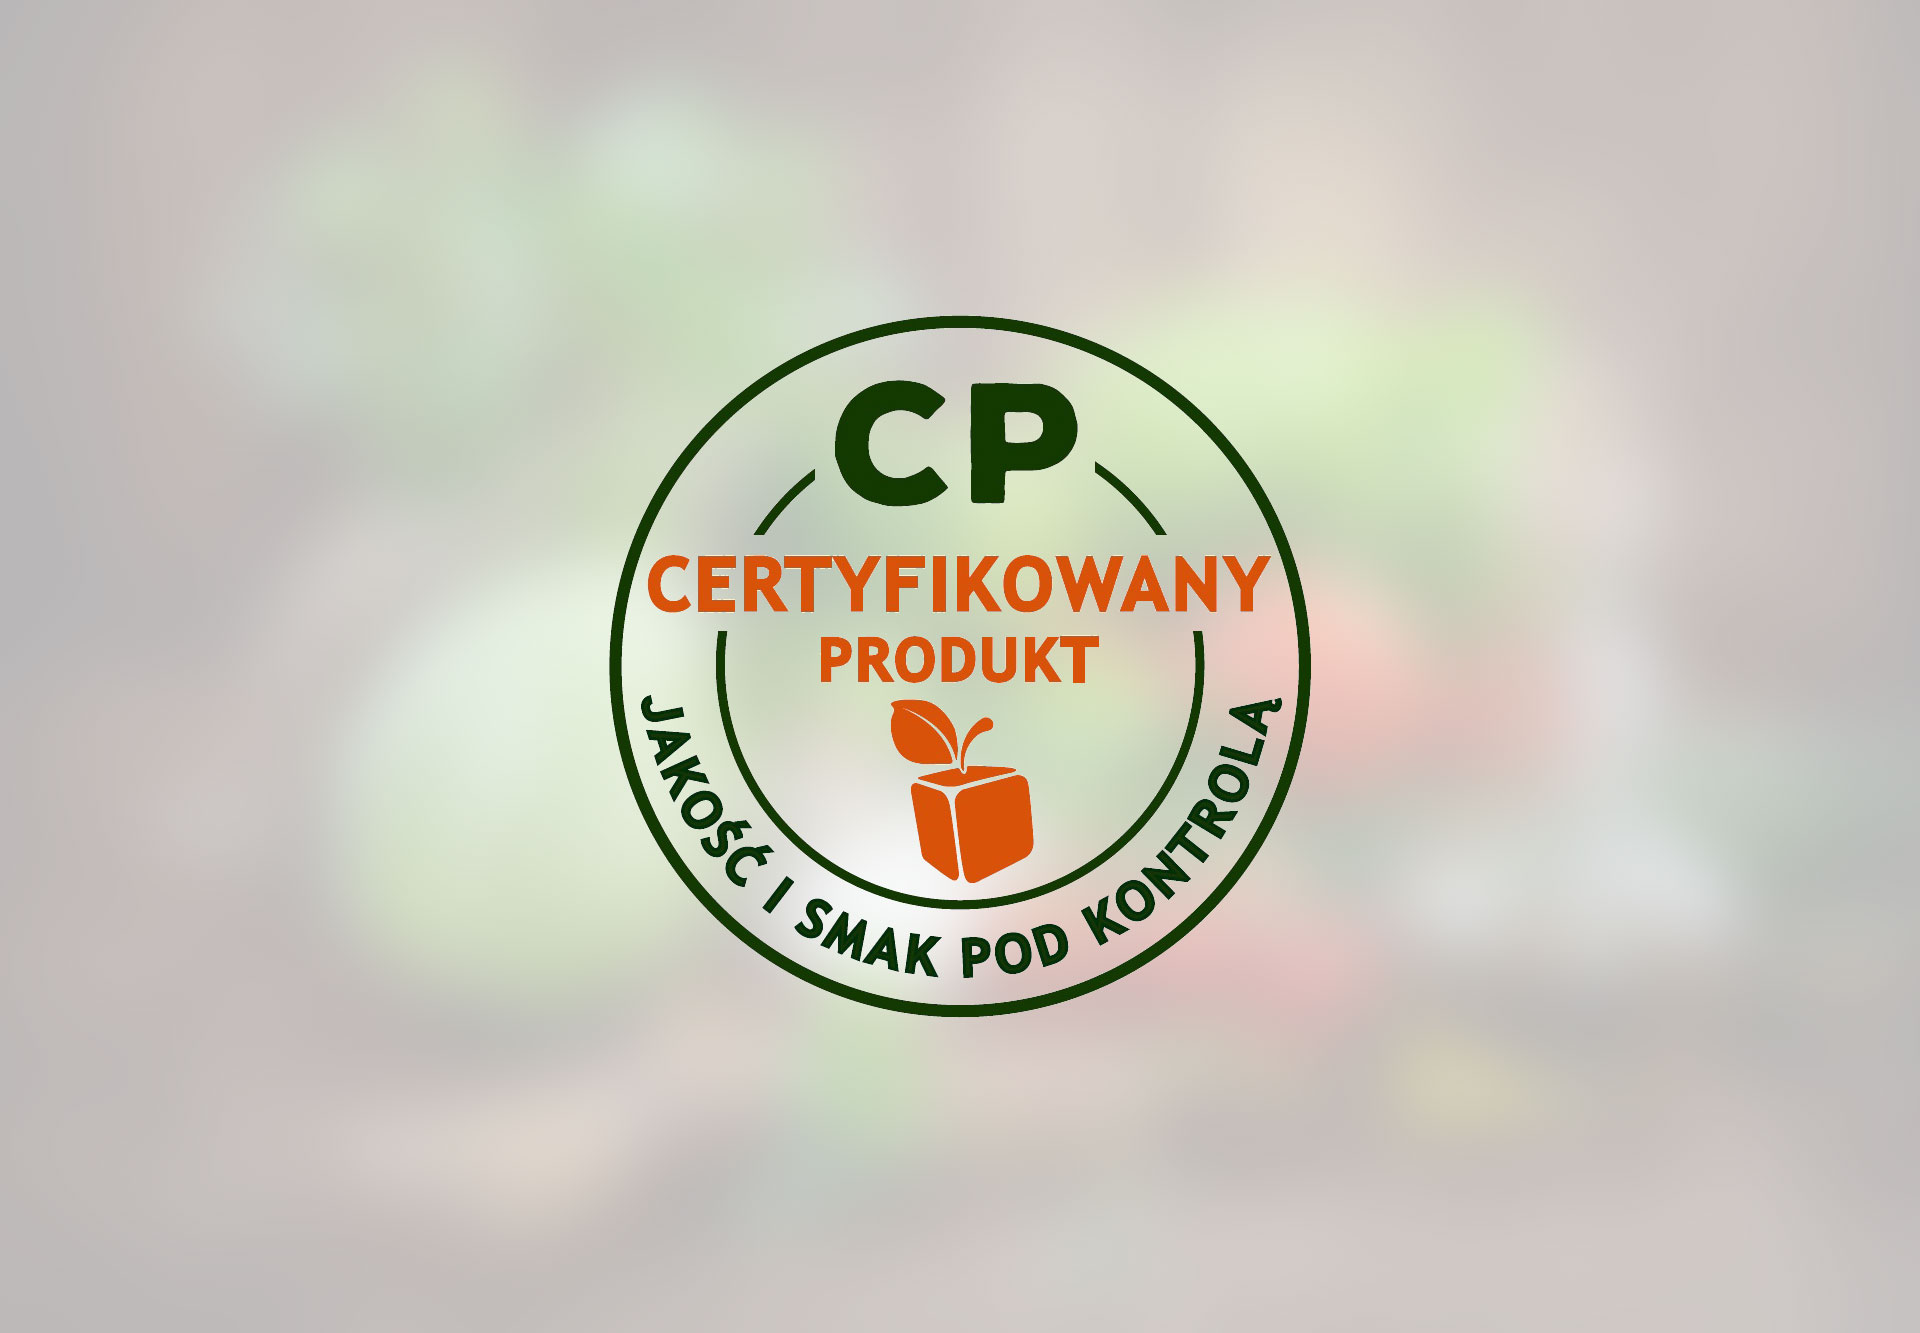 Ruszyła kampania promująca system jakości Certyfikowany Produkt (CP) przeznaczony dla branży owocowo-warzywnej.